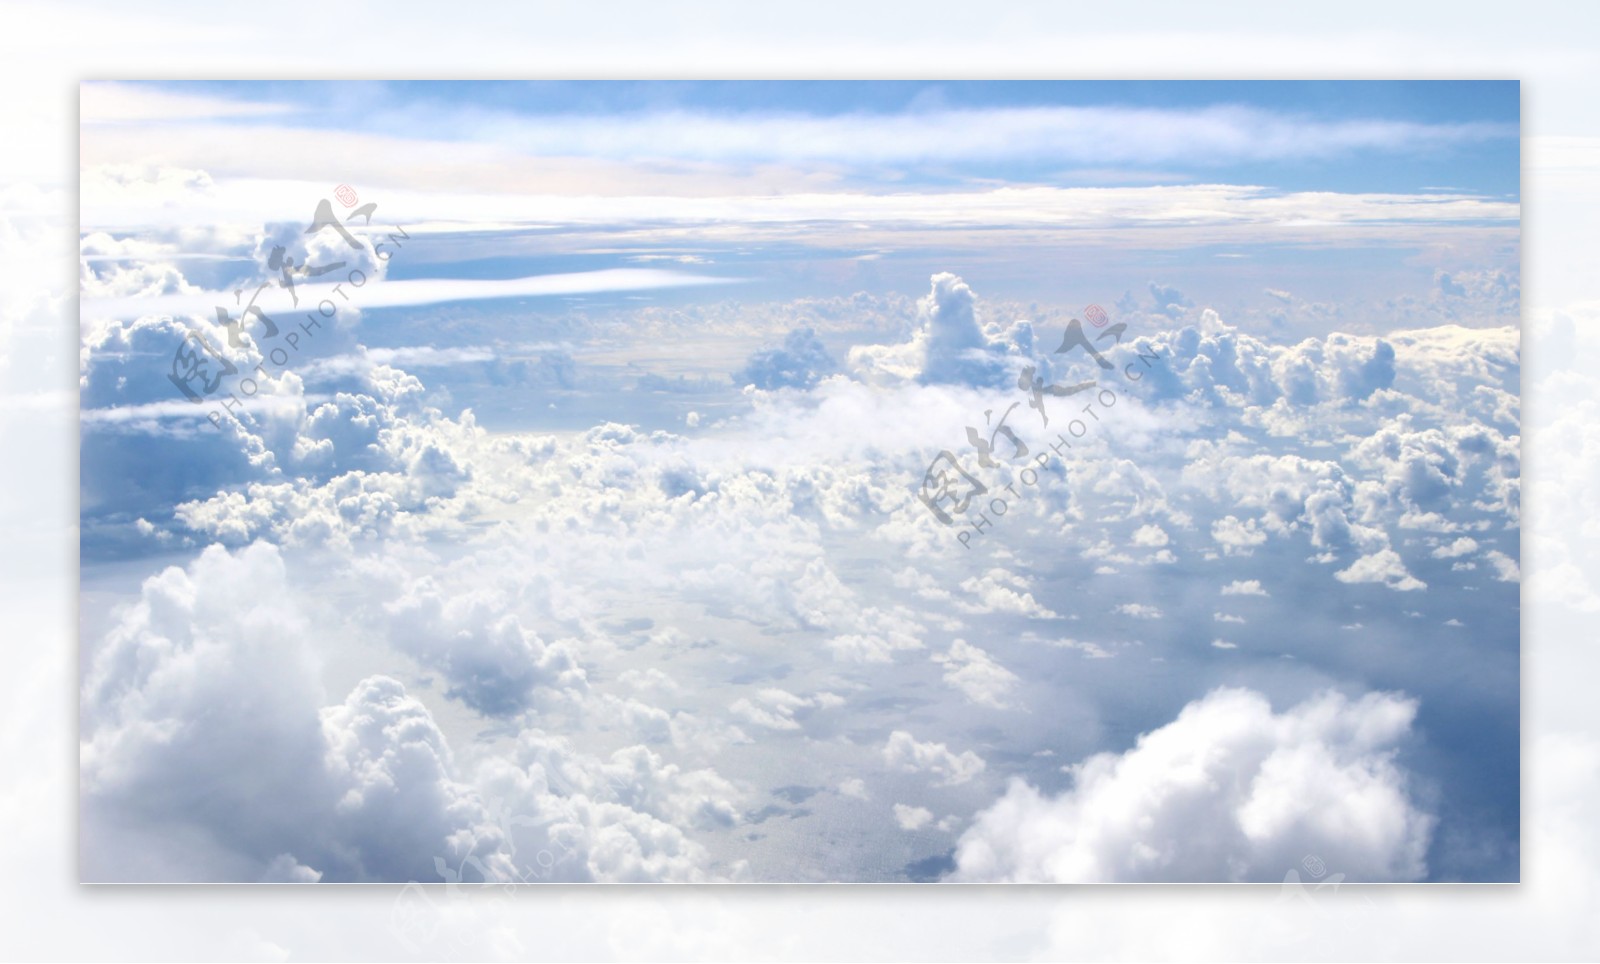 飞机上拍的云朵